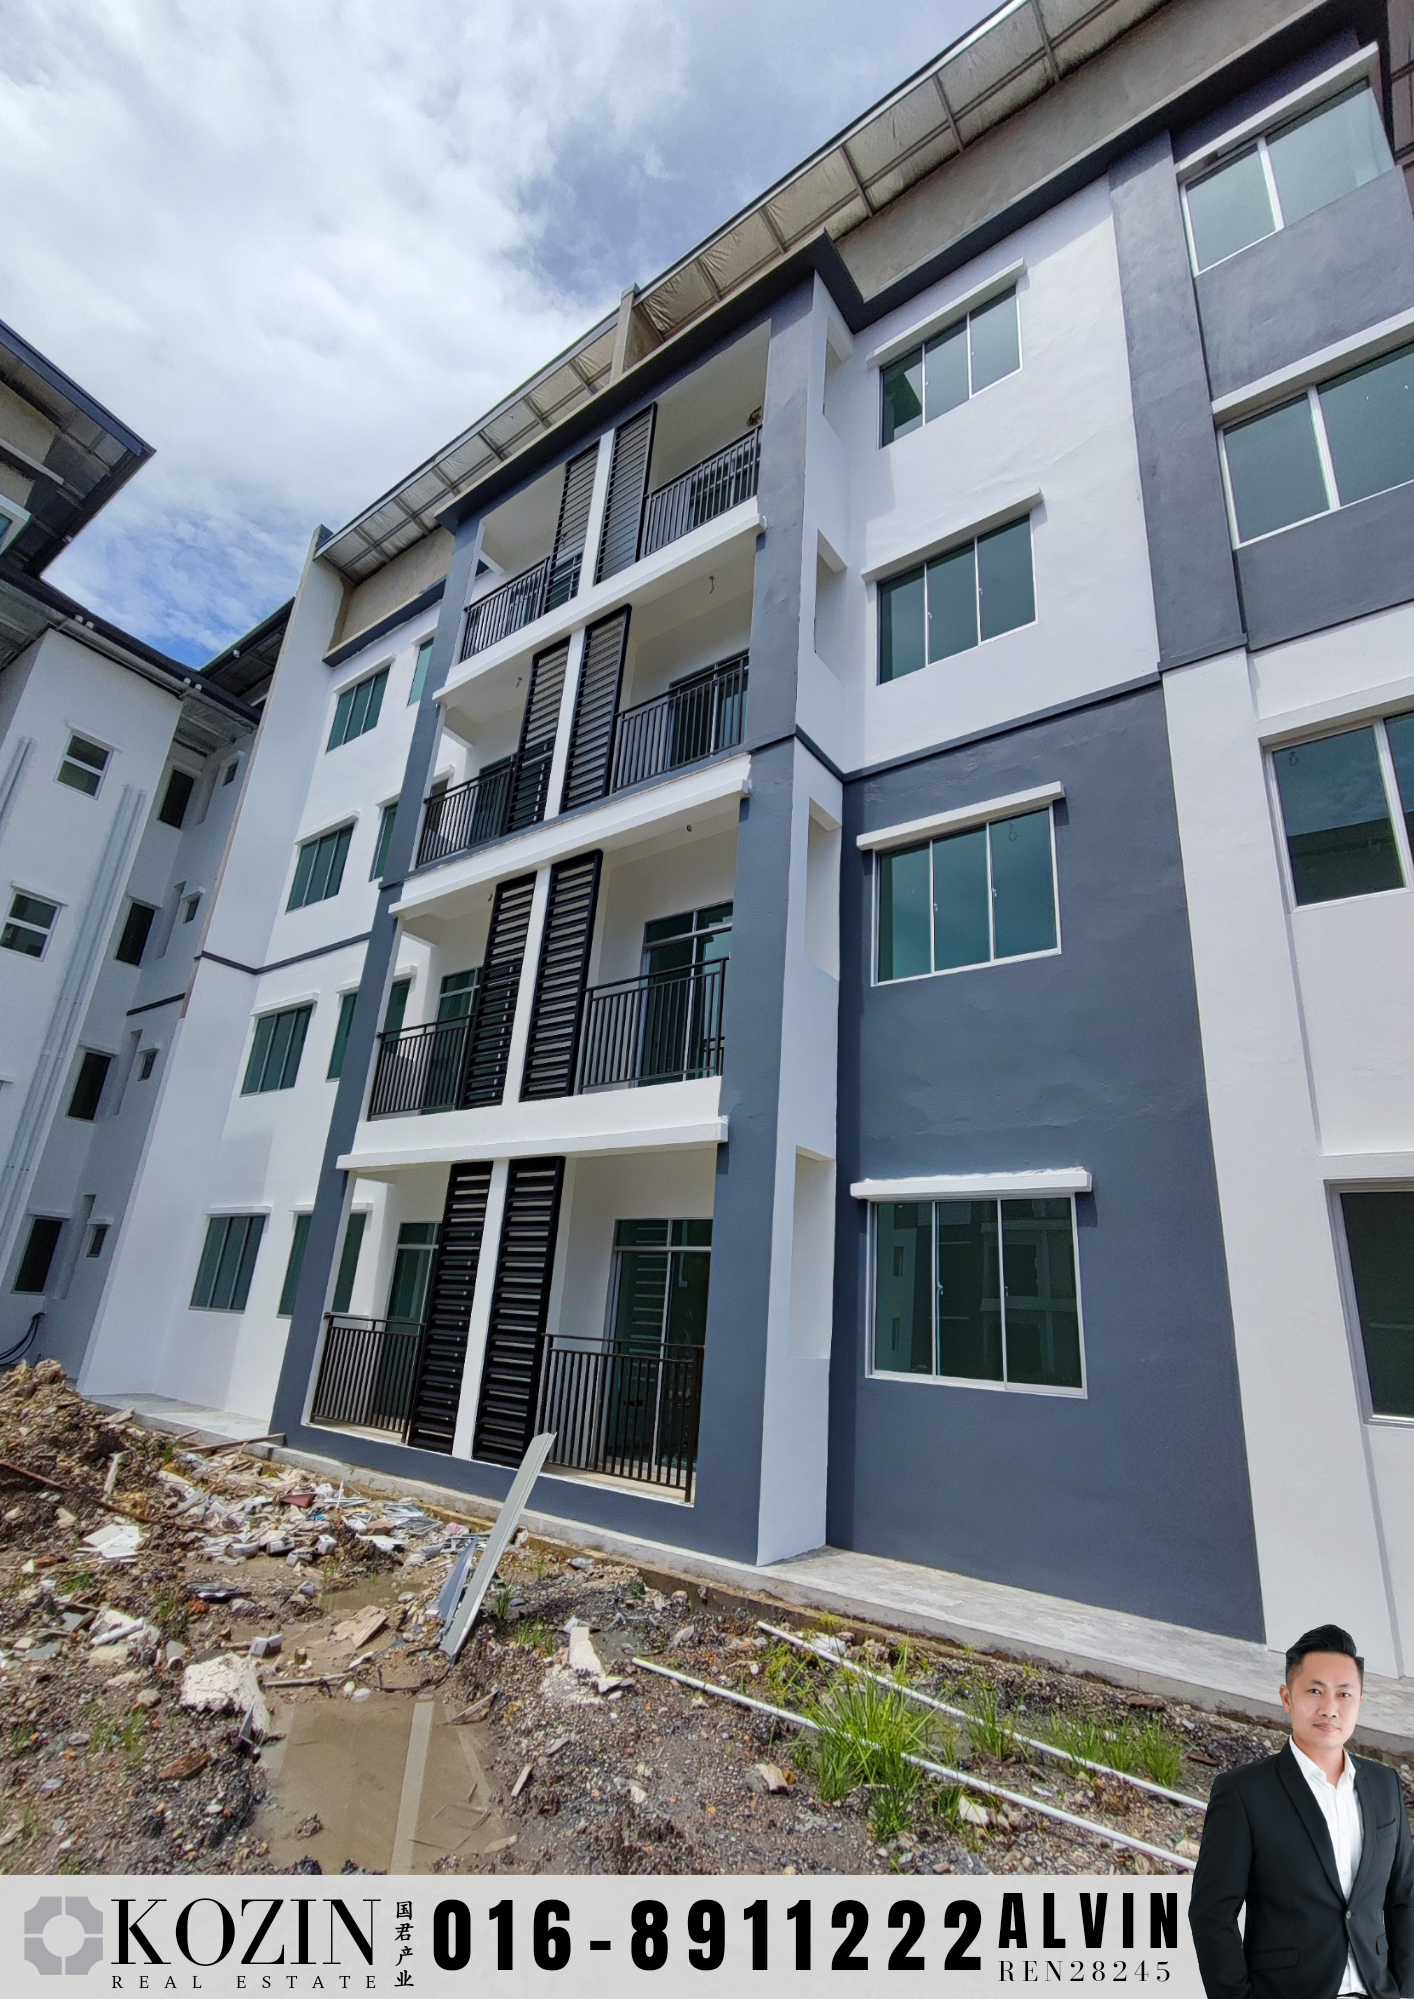 New walk-up Apartment at Samarahan Uni Central